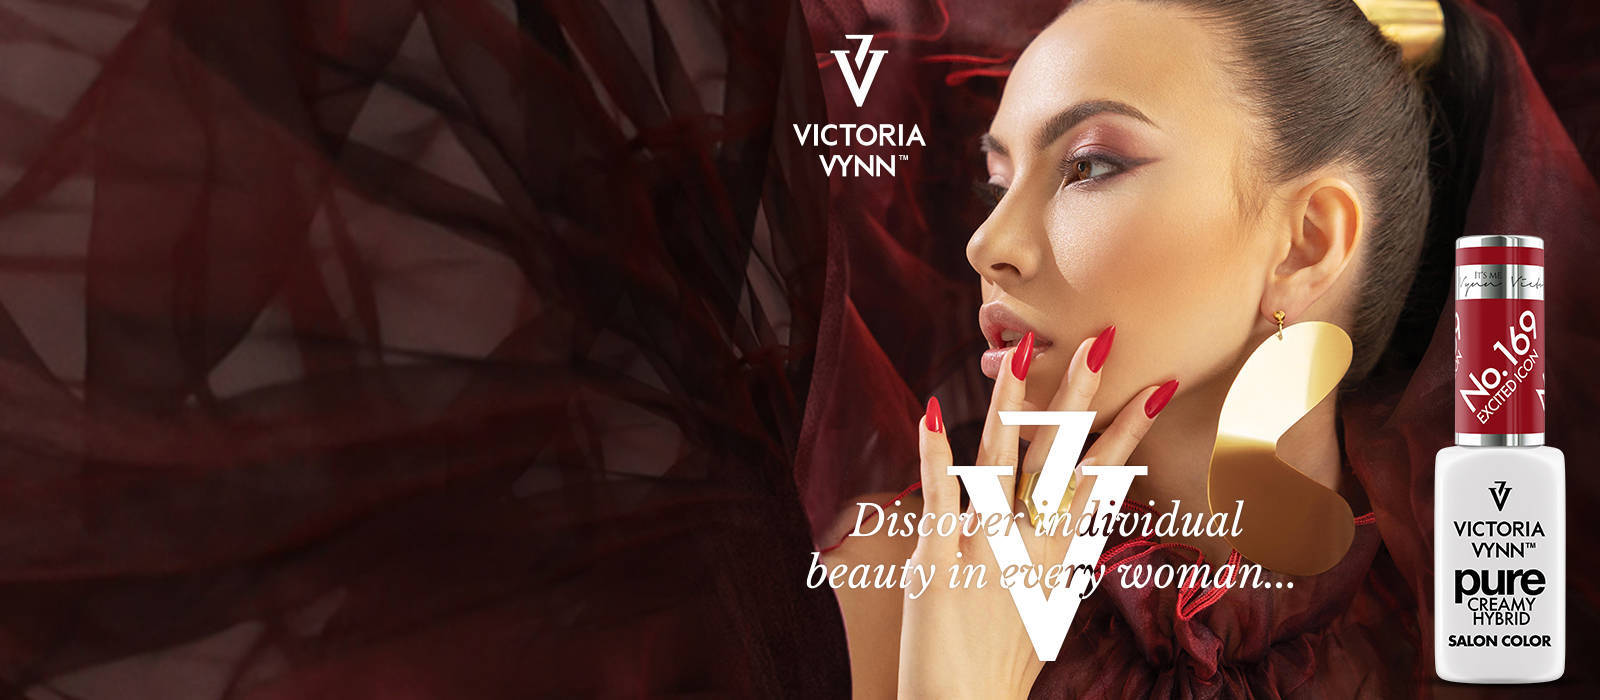 Victoria Vynn od 1 października w Millenium Hall - 1